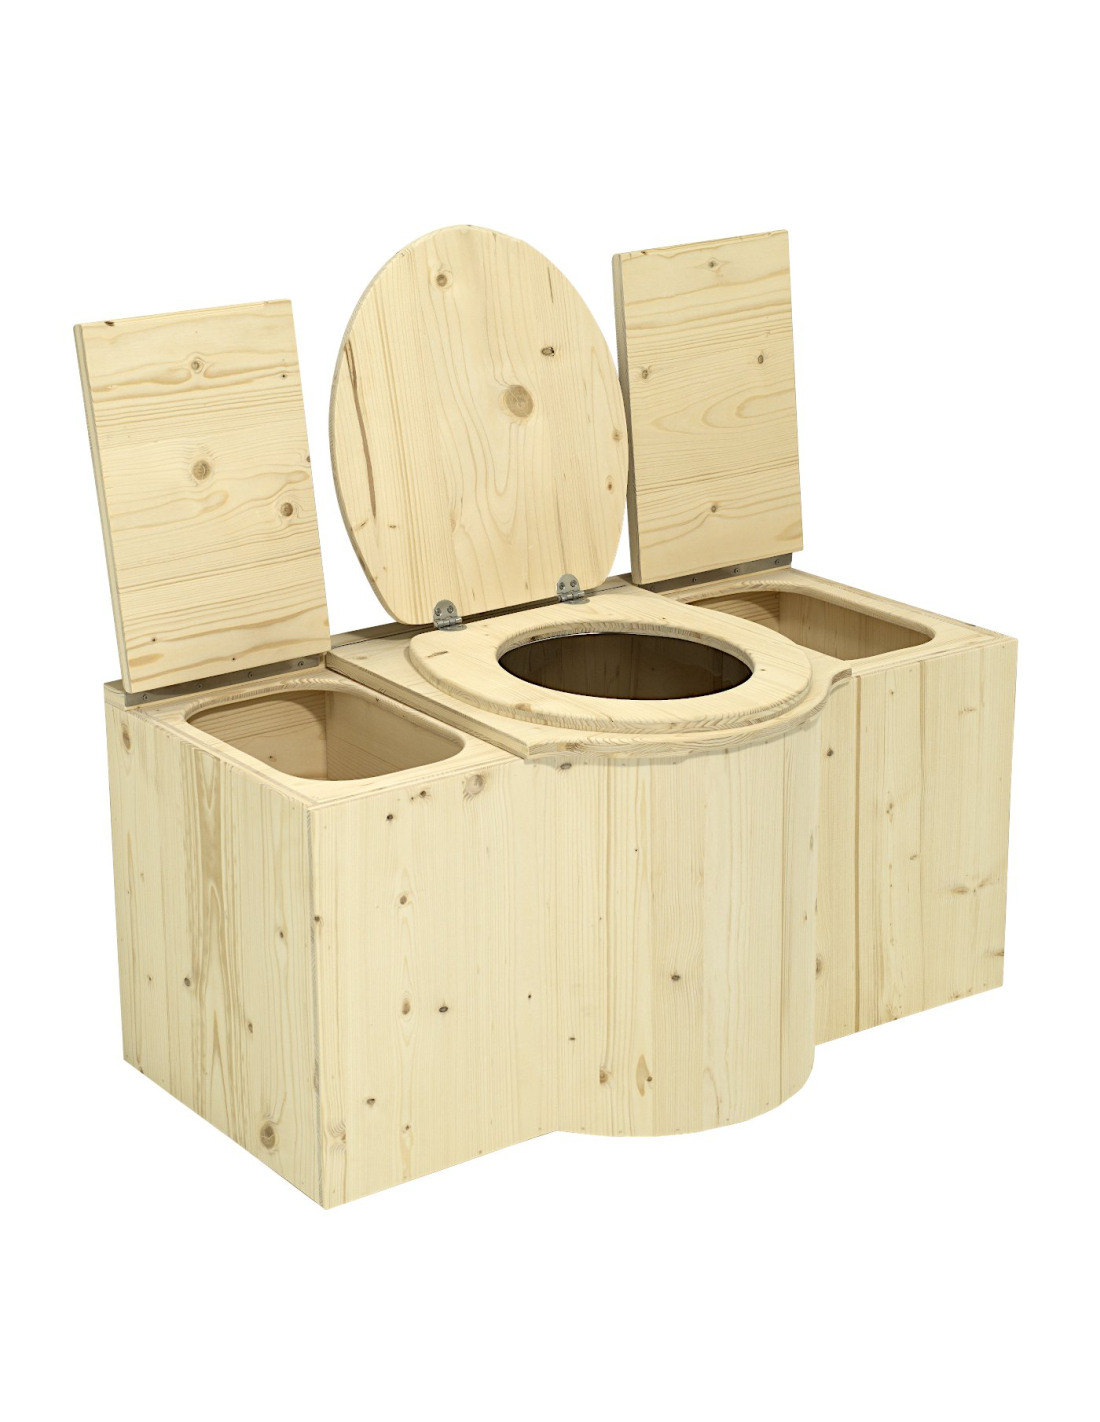 https://www.lecopot.com/2837-thickbox_default/le-parpalhou-toilette-seche.jpg